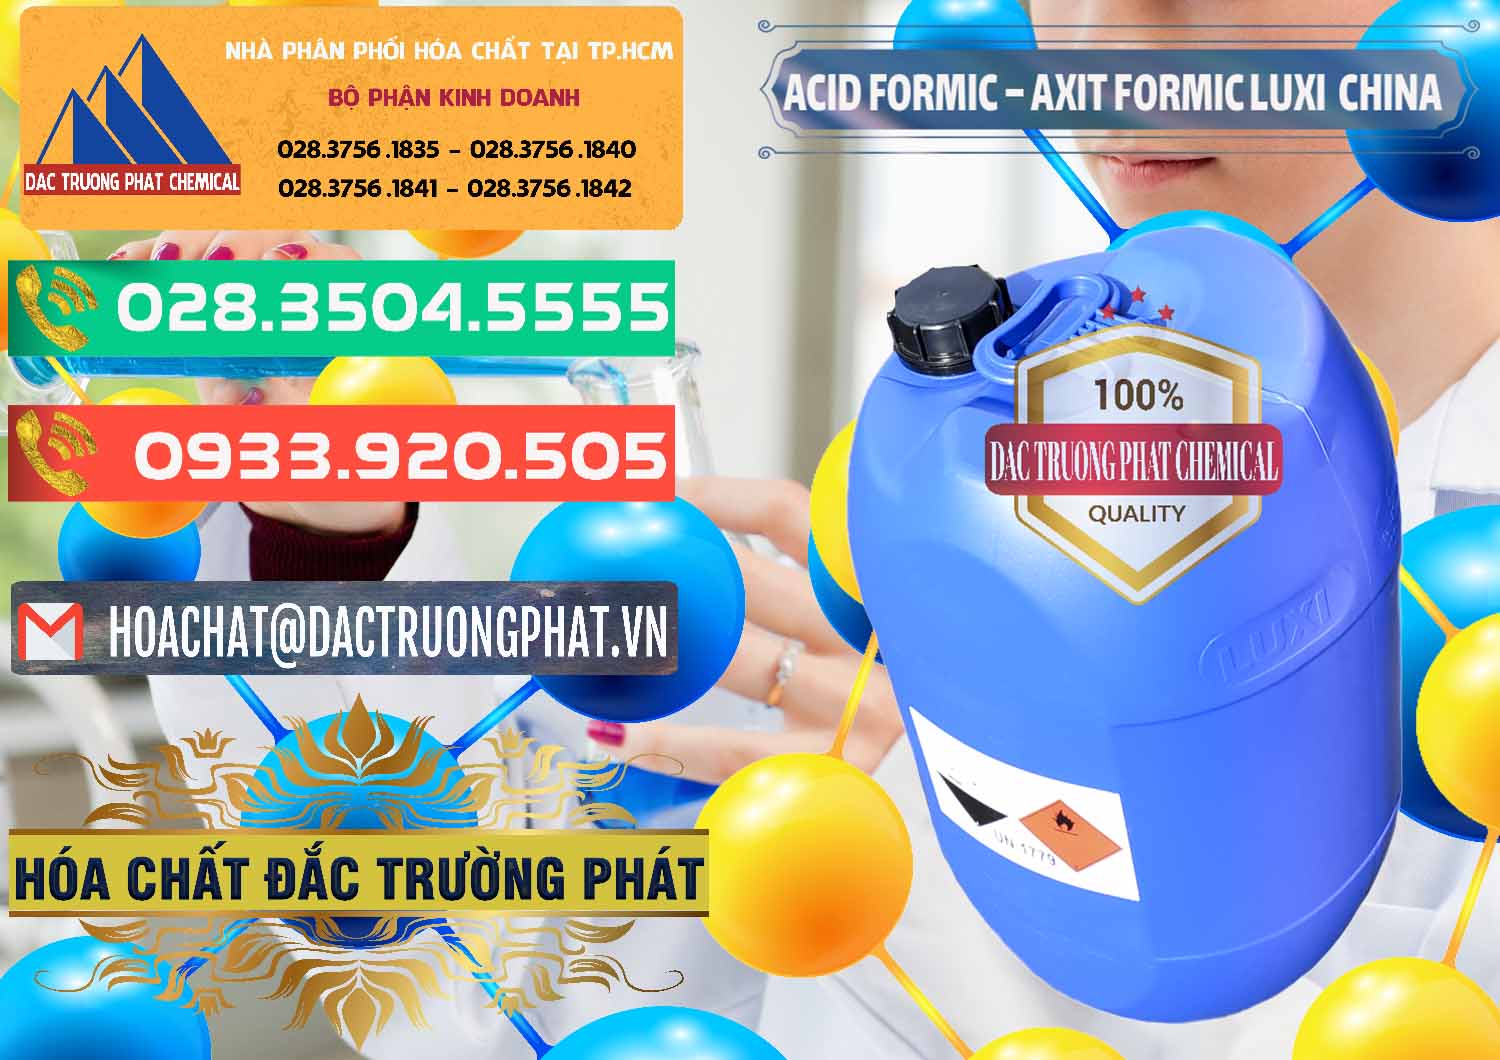 Cty chuyên cung cấp - bán Acid Formic - Axit Formic Luxi Trung Quốc China - 0029 - Đơn vị chuyên nhập khẩu và phân phối hóa chất tại TP.HCM - congtyhoachat.com.vn